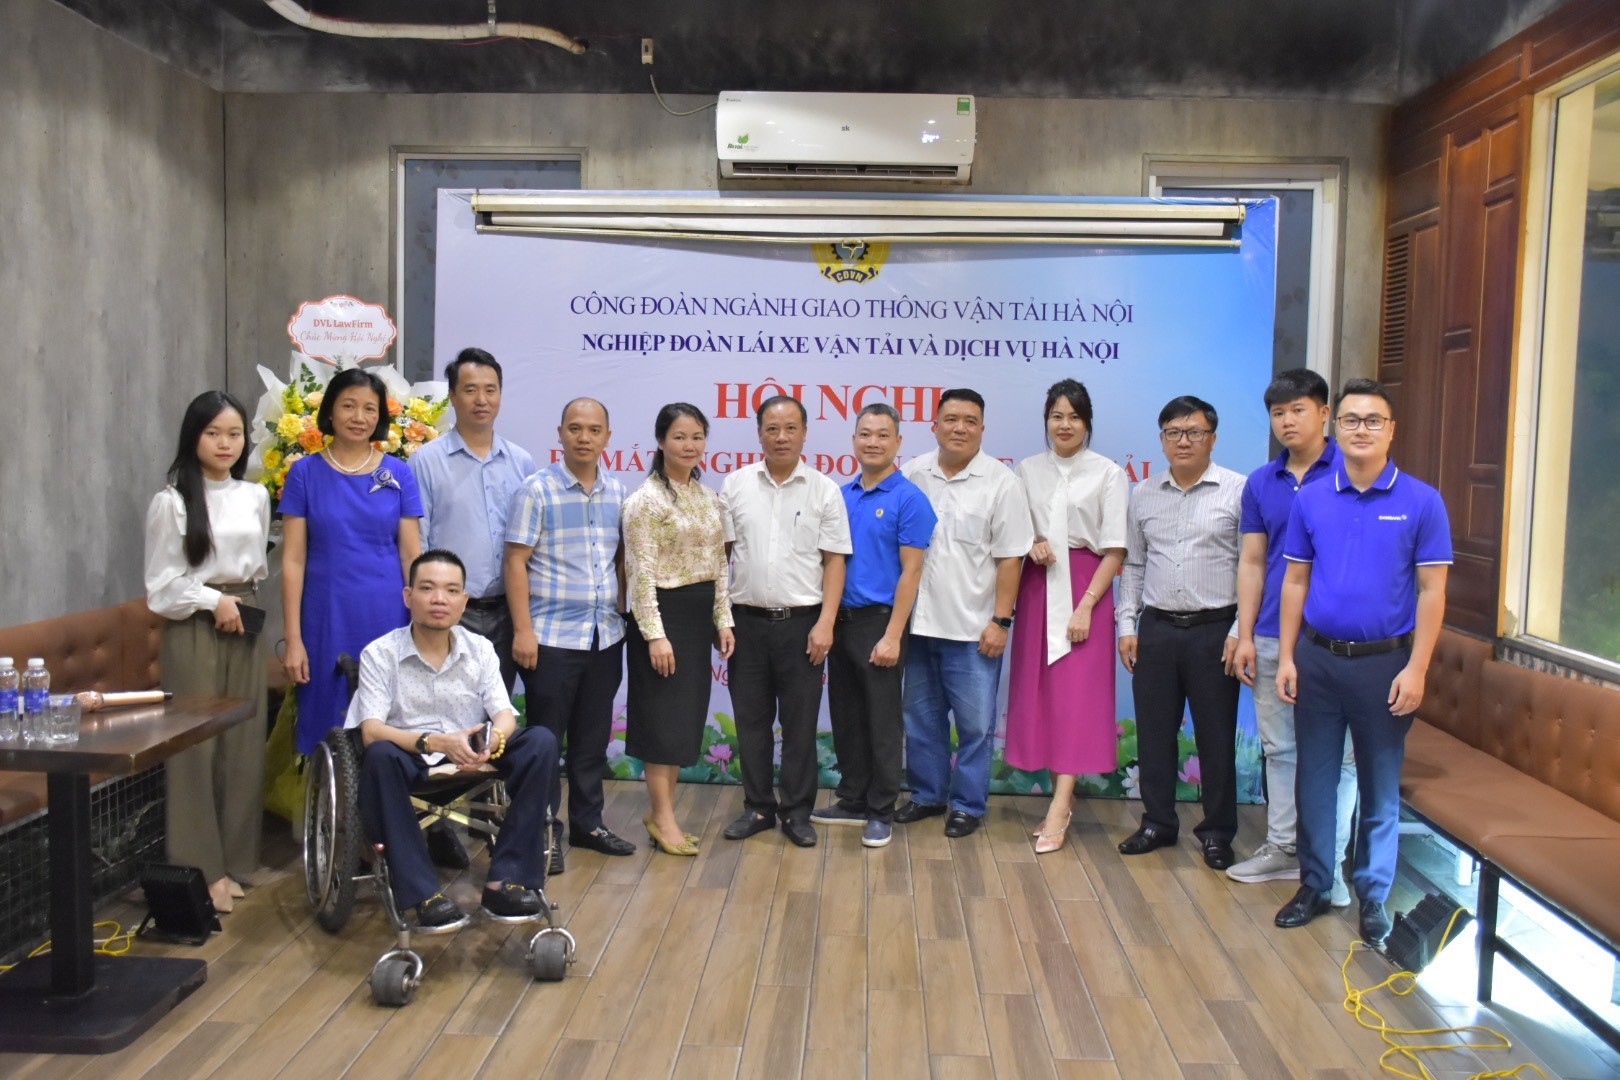 Lễ ra mắt Nghiệp đoàn Lái xe vận tải và dịch vụ Hà Nội pld